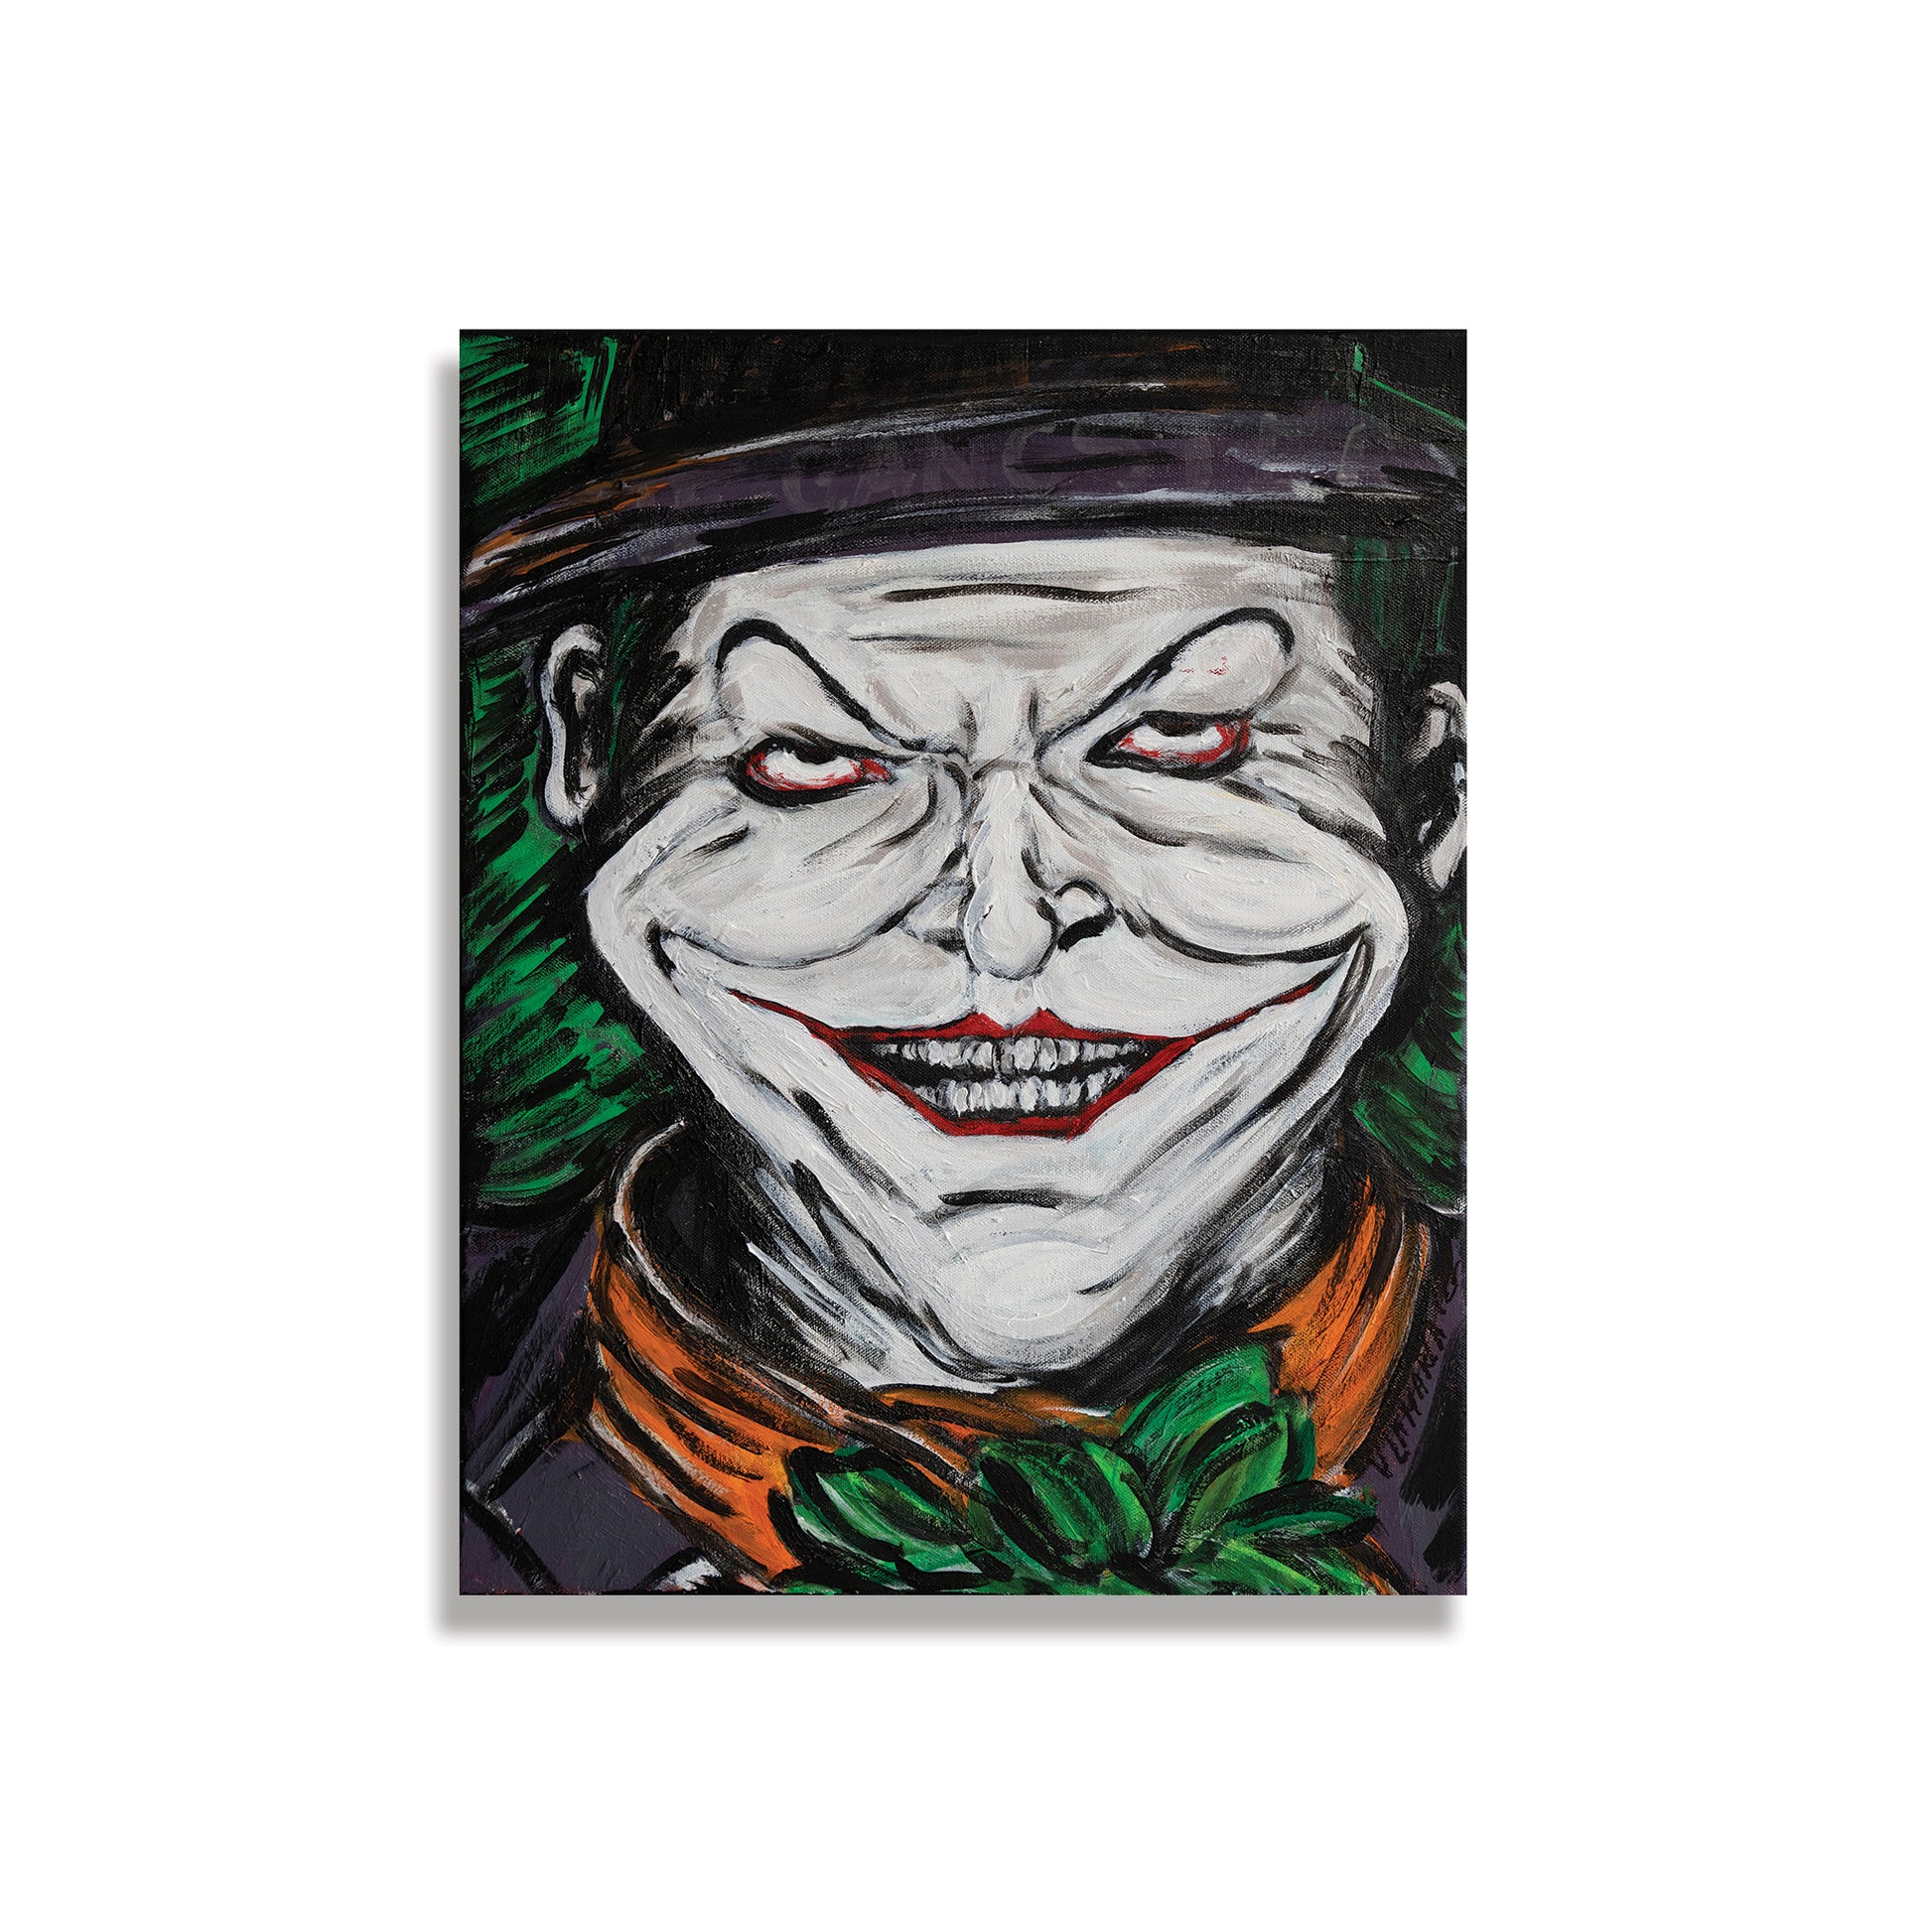 Gangster Jokers Drawings